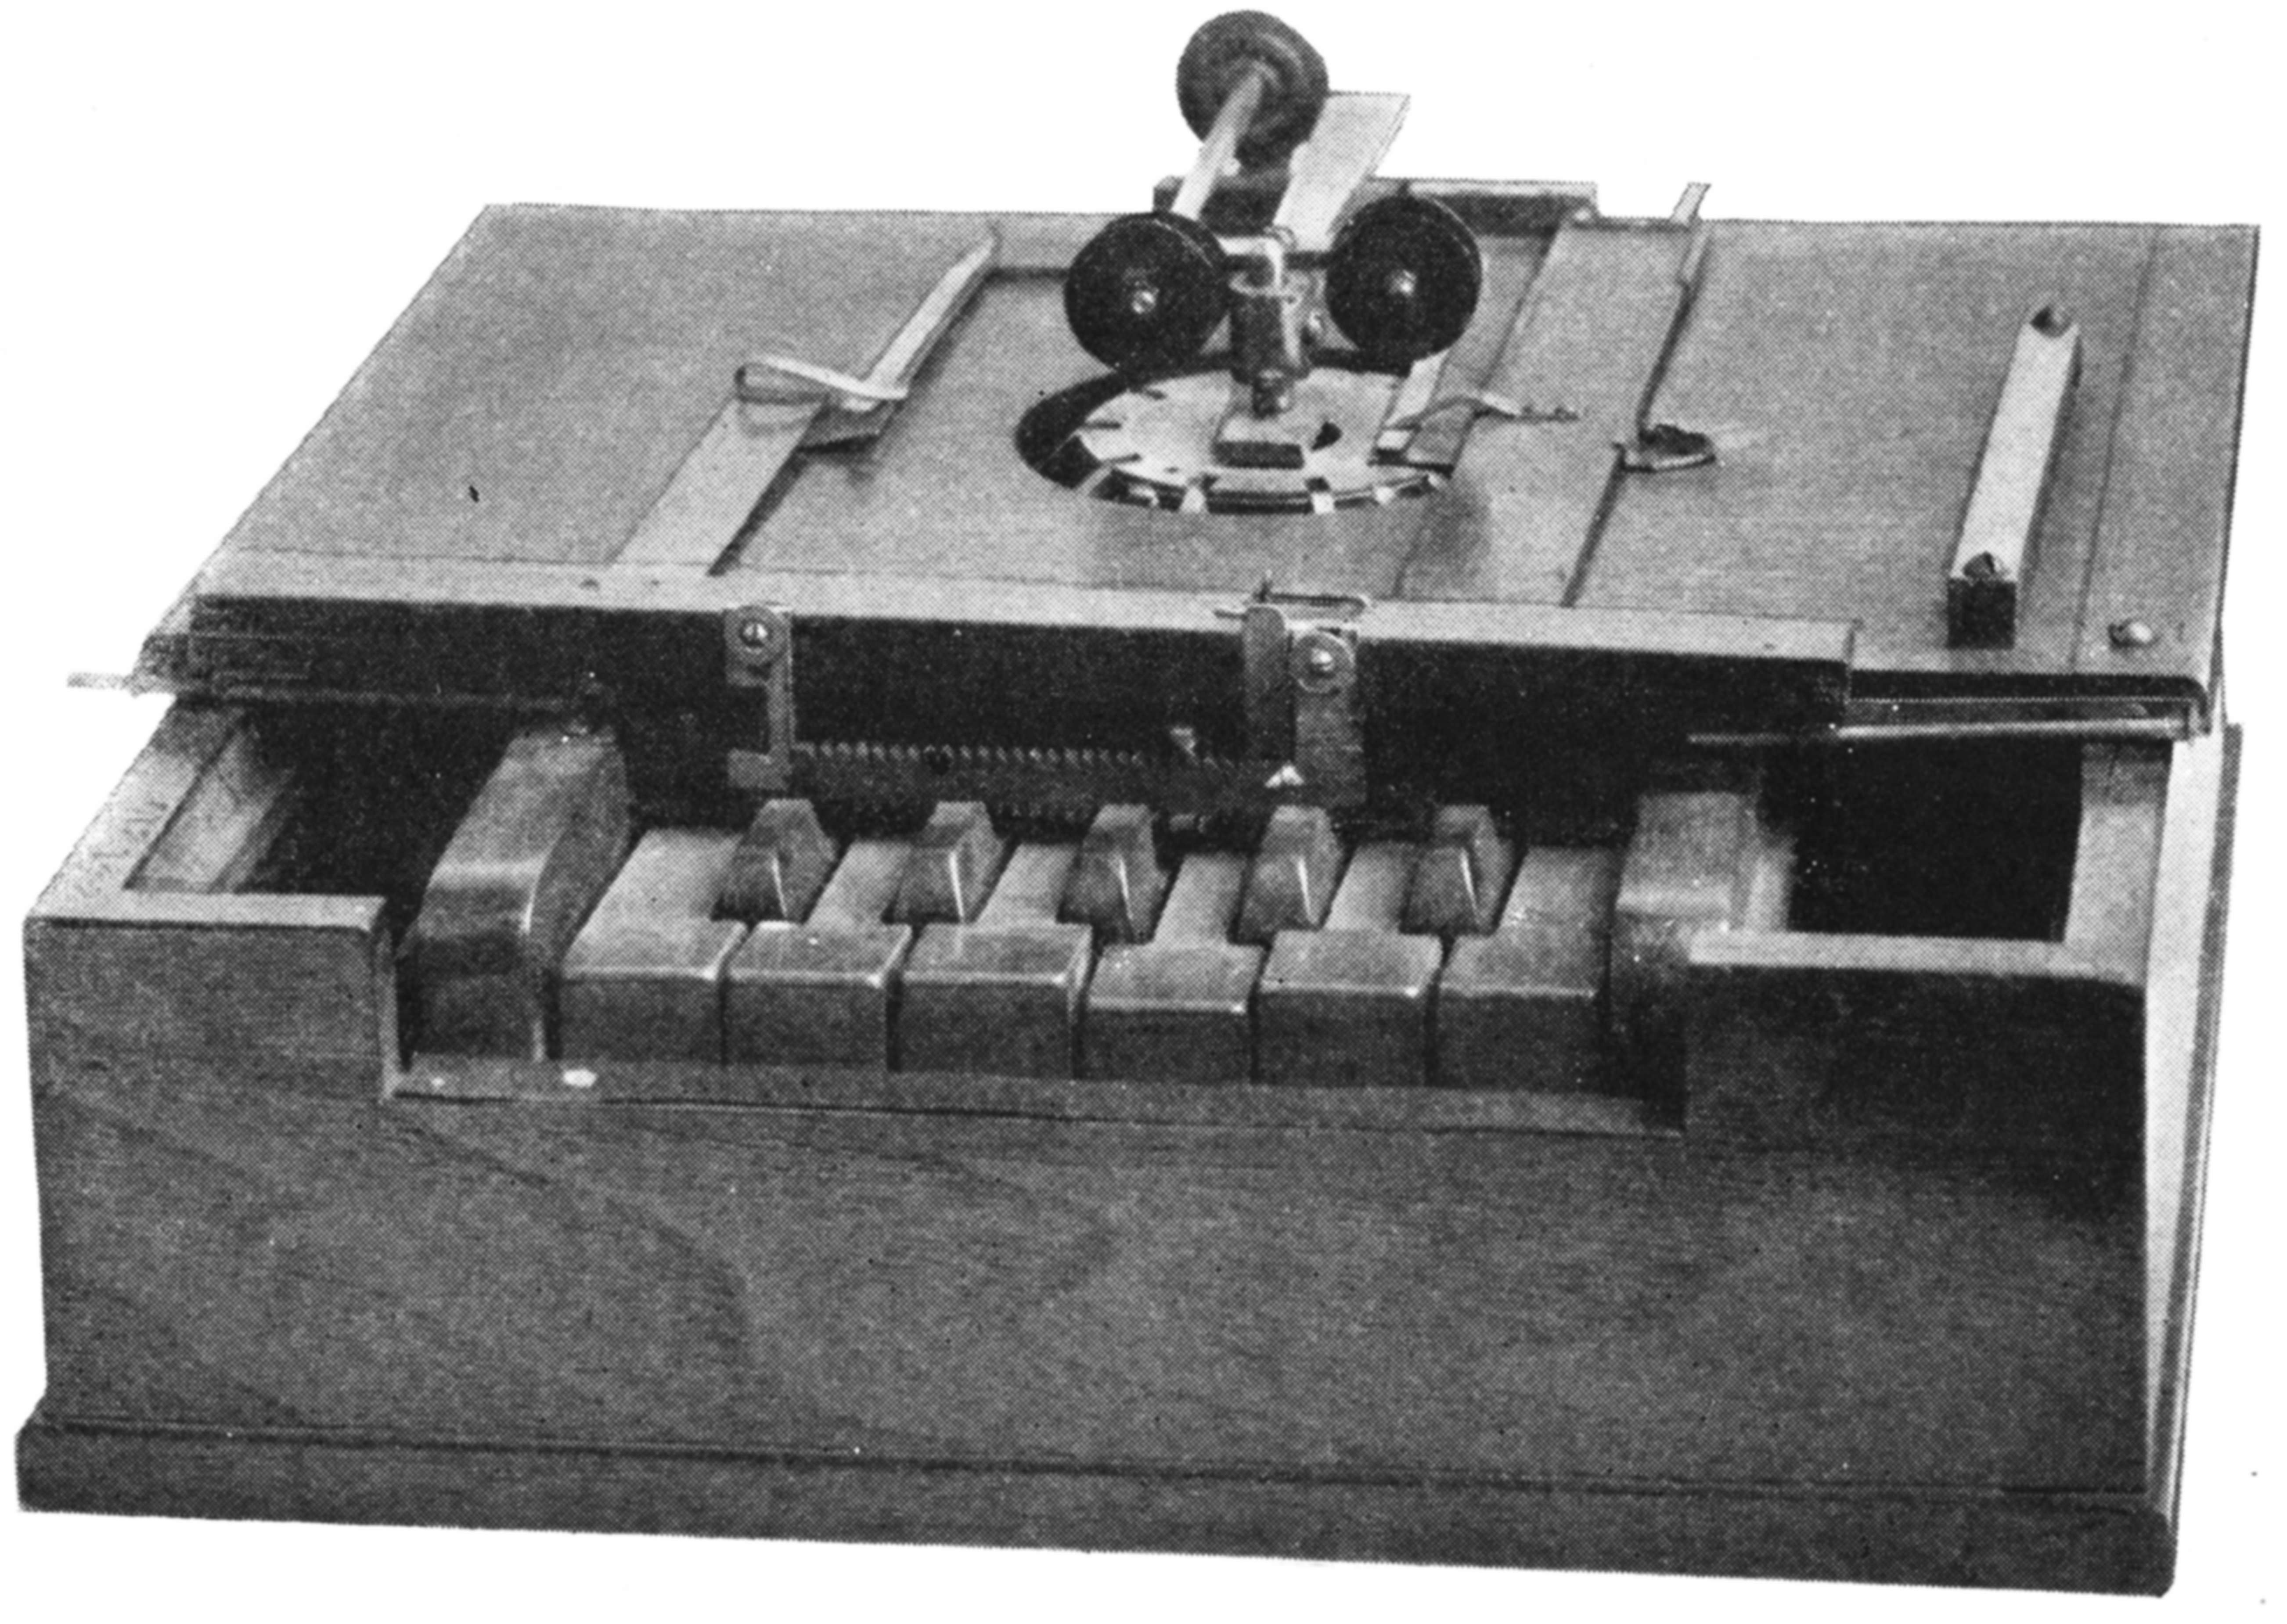 1868年5月にショールズ、グリデン、ソレーが特許を出願したタイプライター